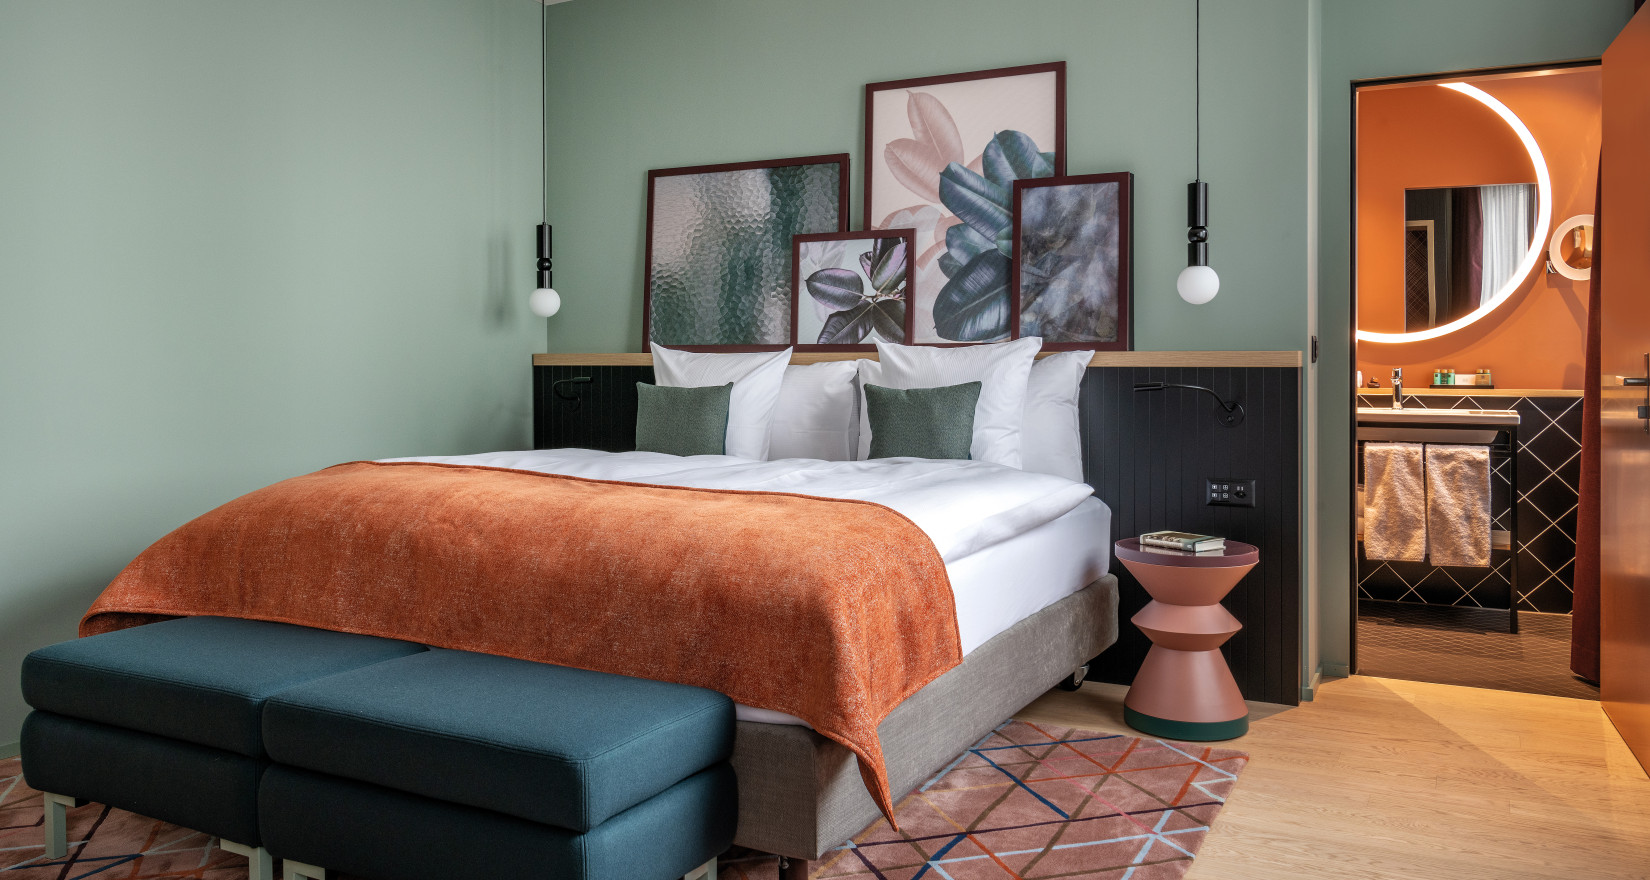 Hotelzimmer mit grüner Rückwand und einem Doppelbett mit orangem Überwurf, passend dazu ein Teppich